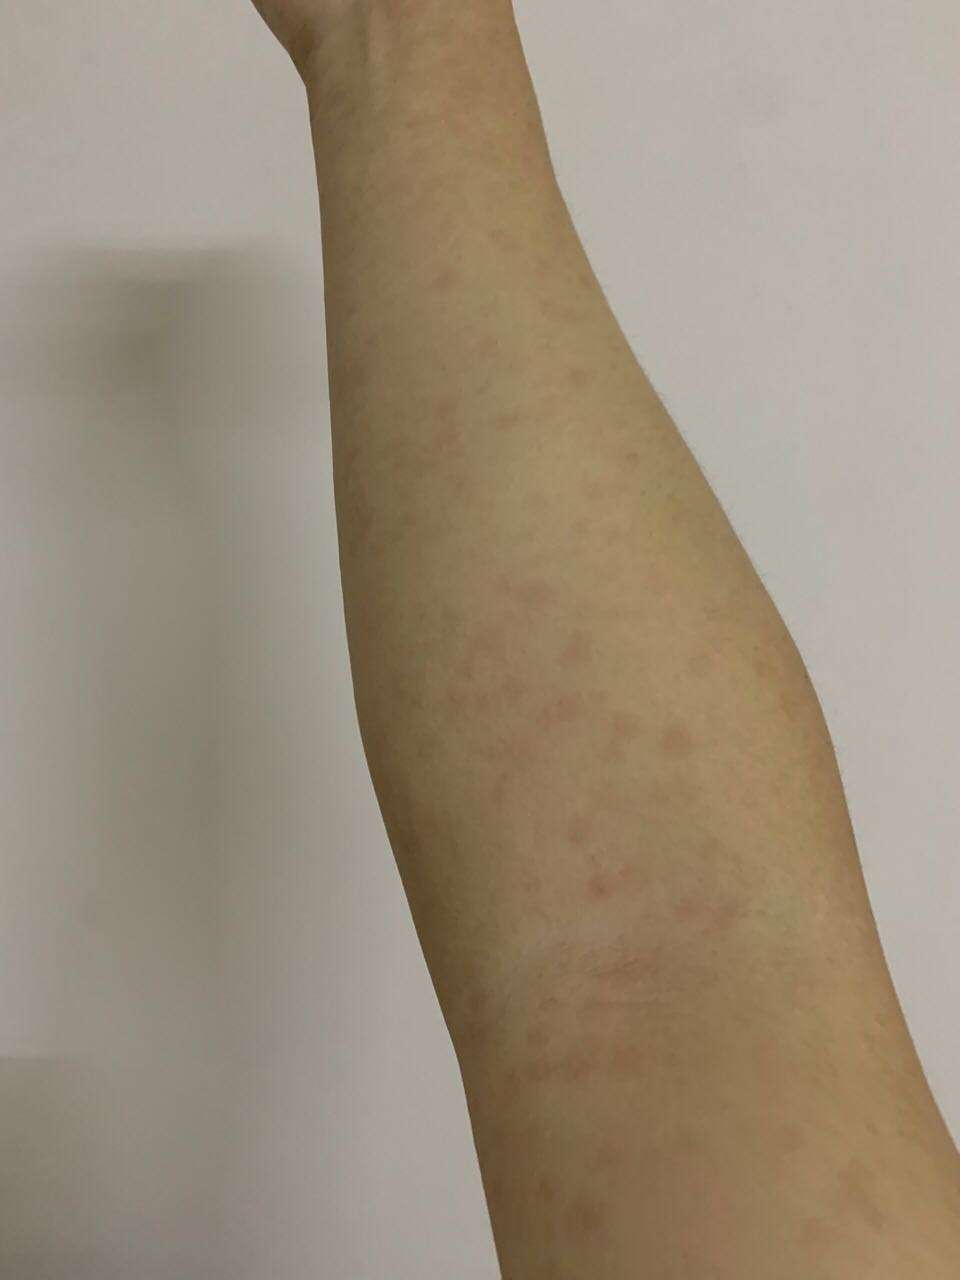 最近手臂上出现这种红斑,而且越变越多,是梅毒的症状吗?